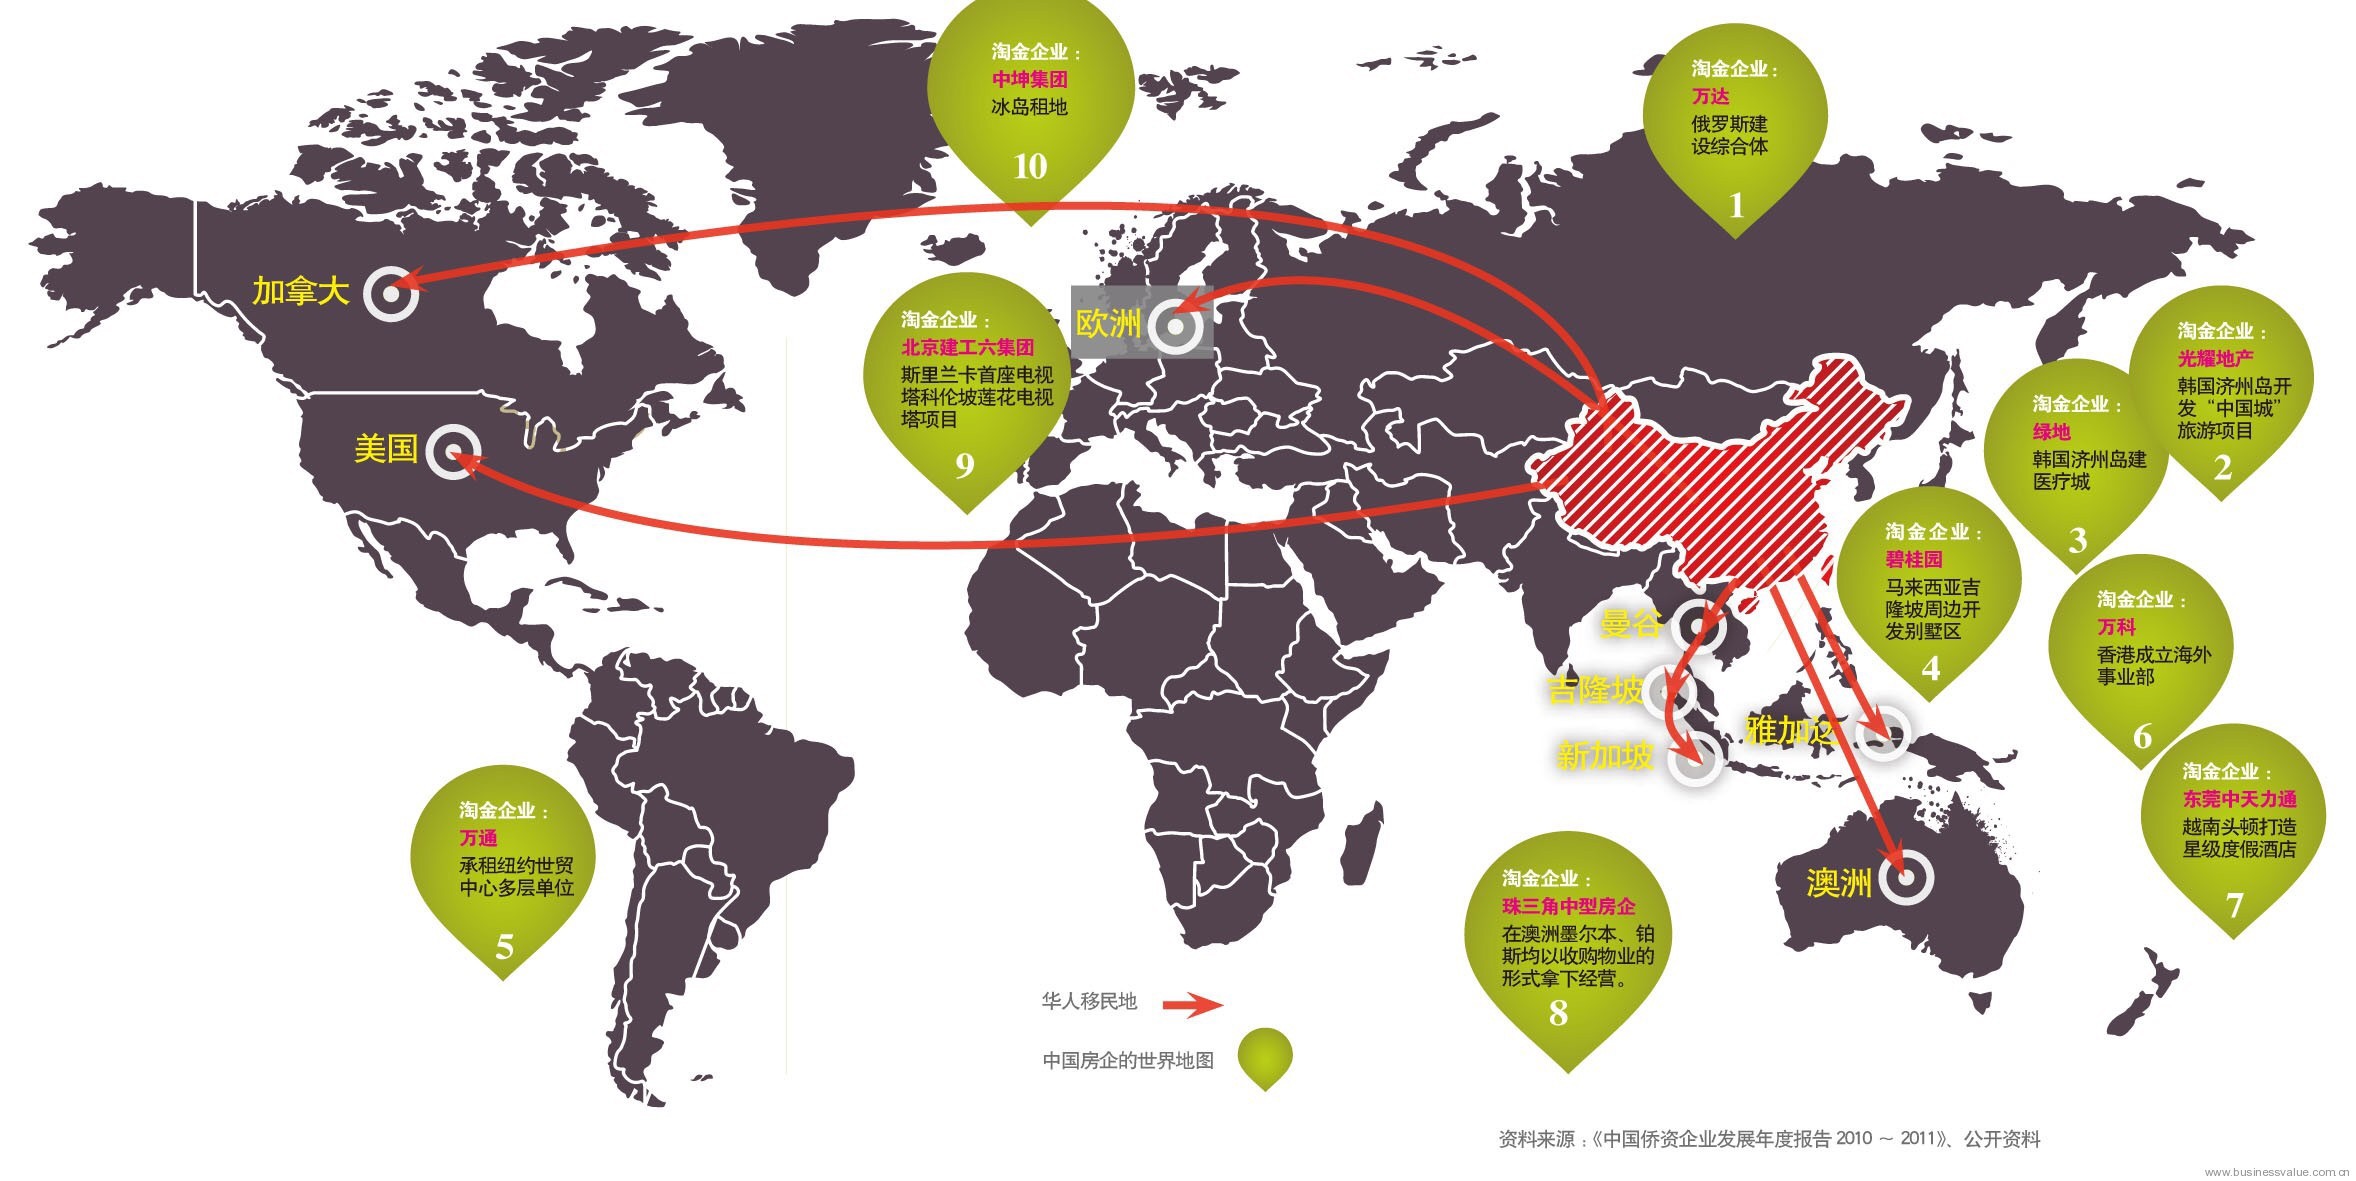 担心食品安全问题 2014年中国人海外地产投资暴增46%-房产新闻-北京百度乐居房产网